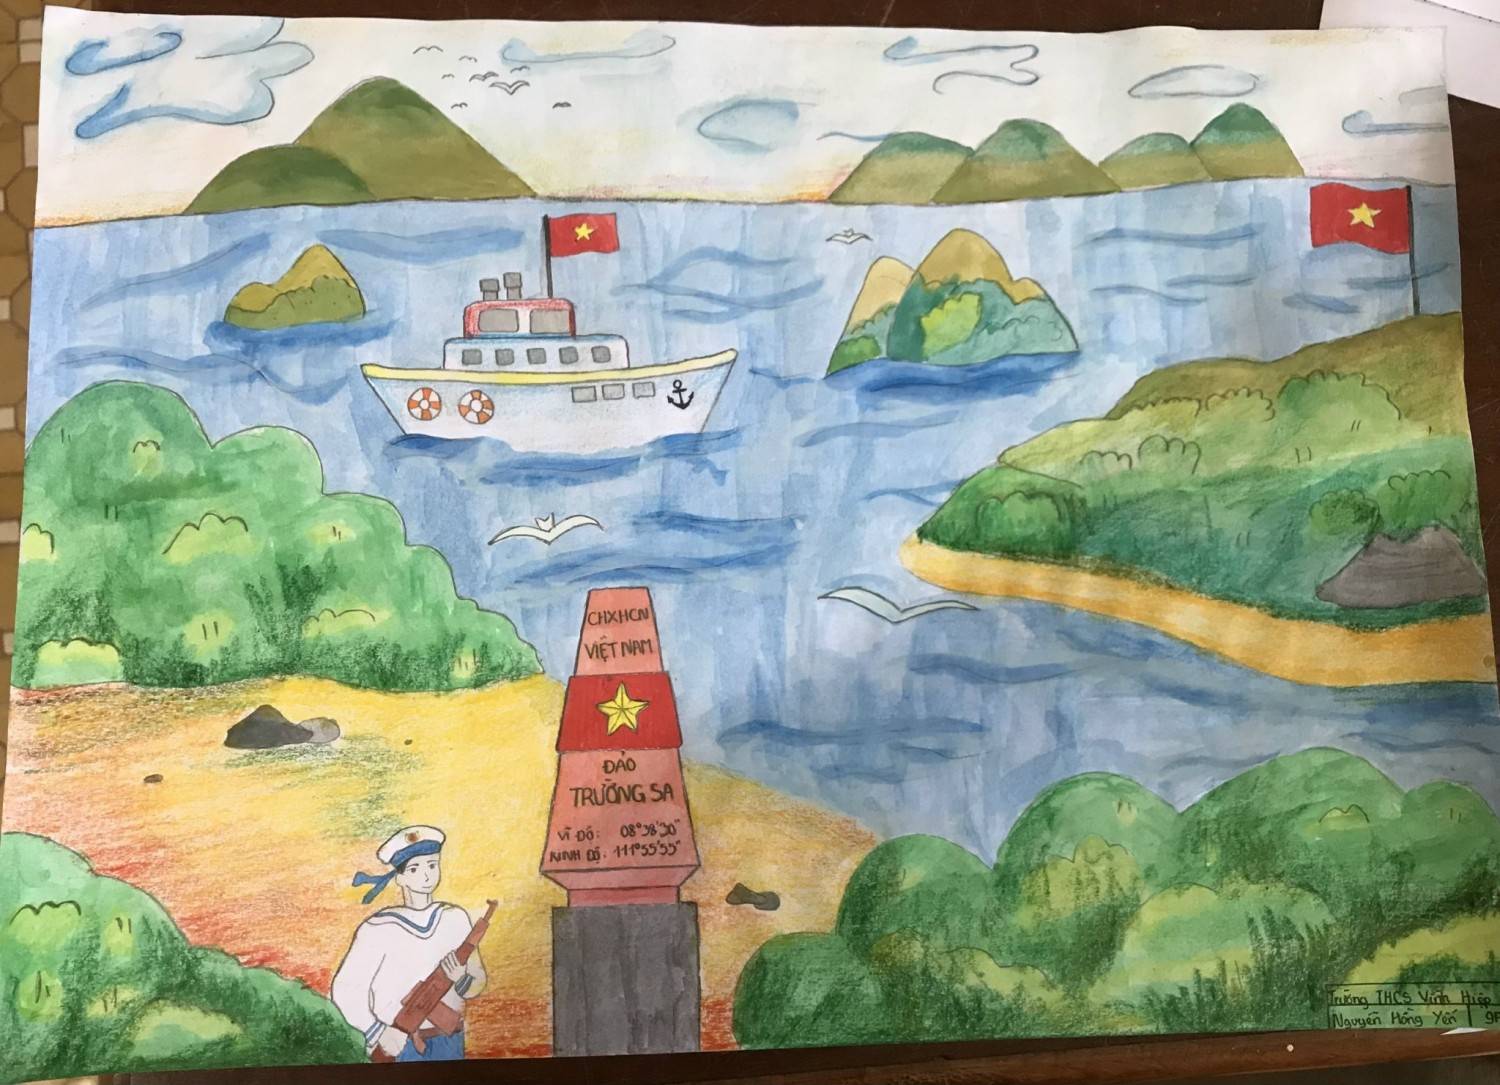 Bài dự thi đạt giải Khuyến khích của em Nguyễn Hồng Yến, lớp 9A trường THCS Vĩnh Hiệp